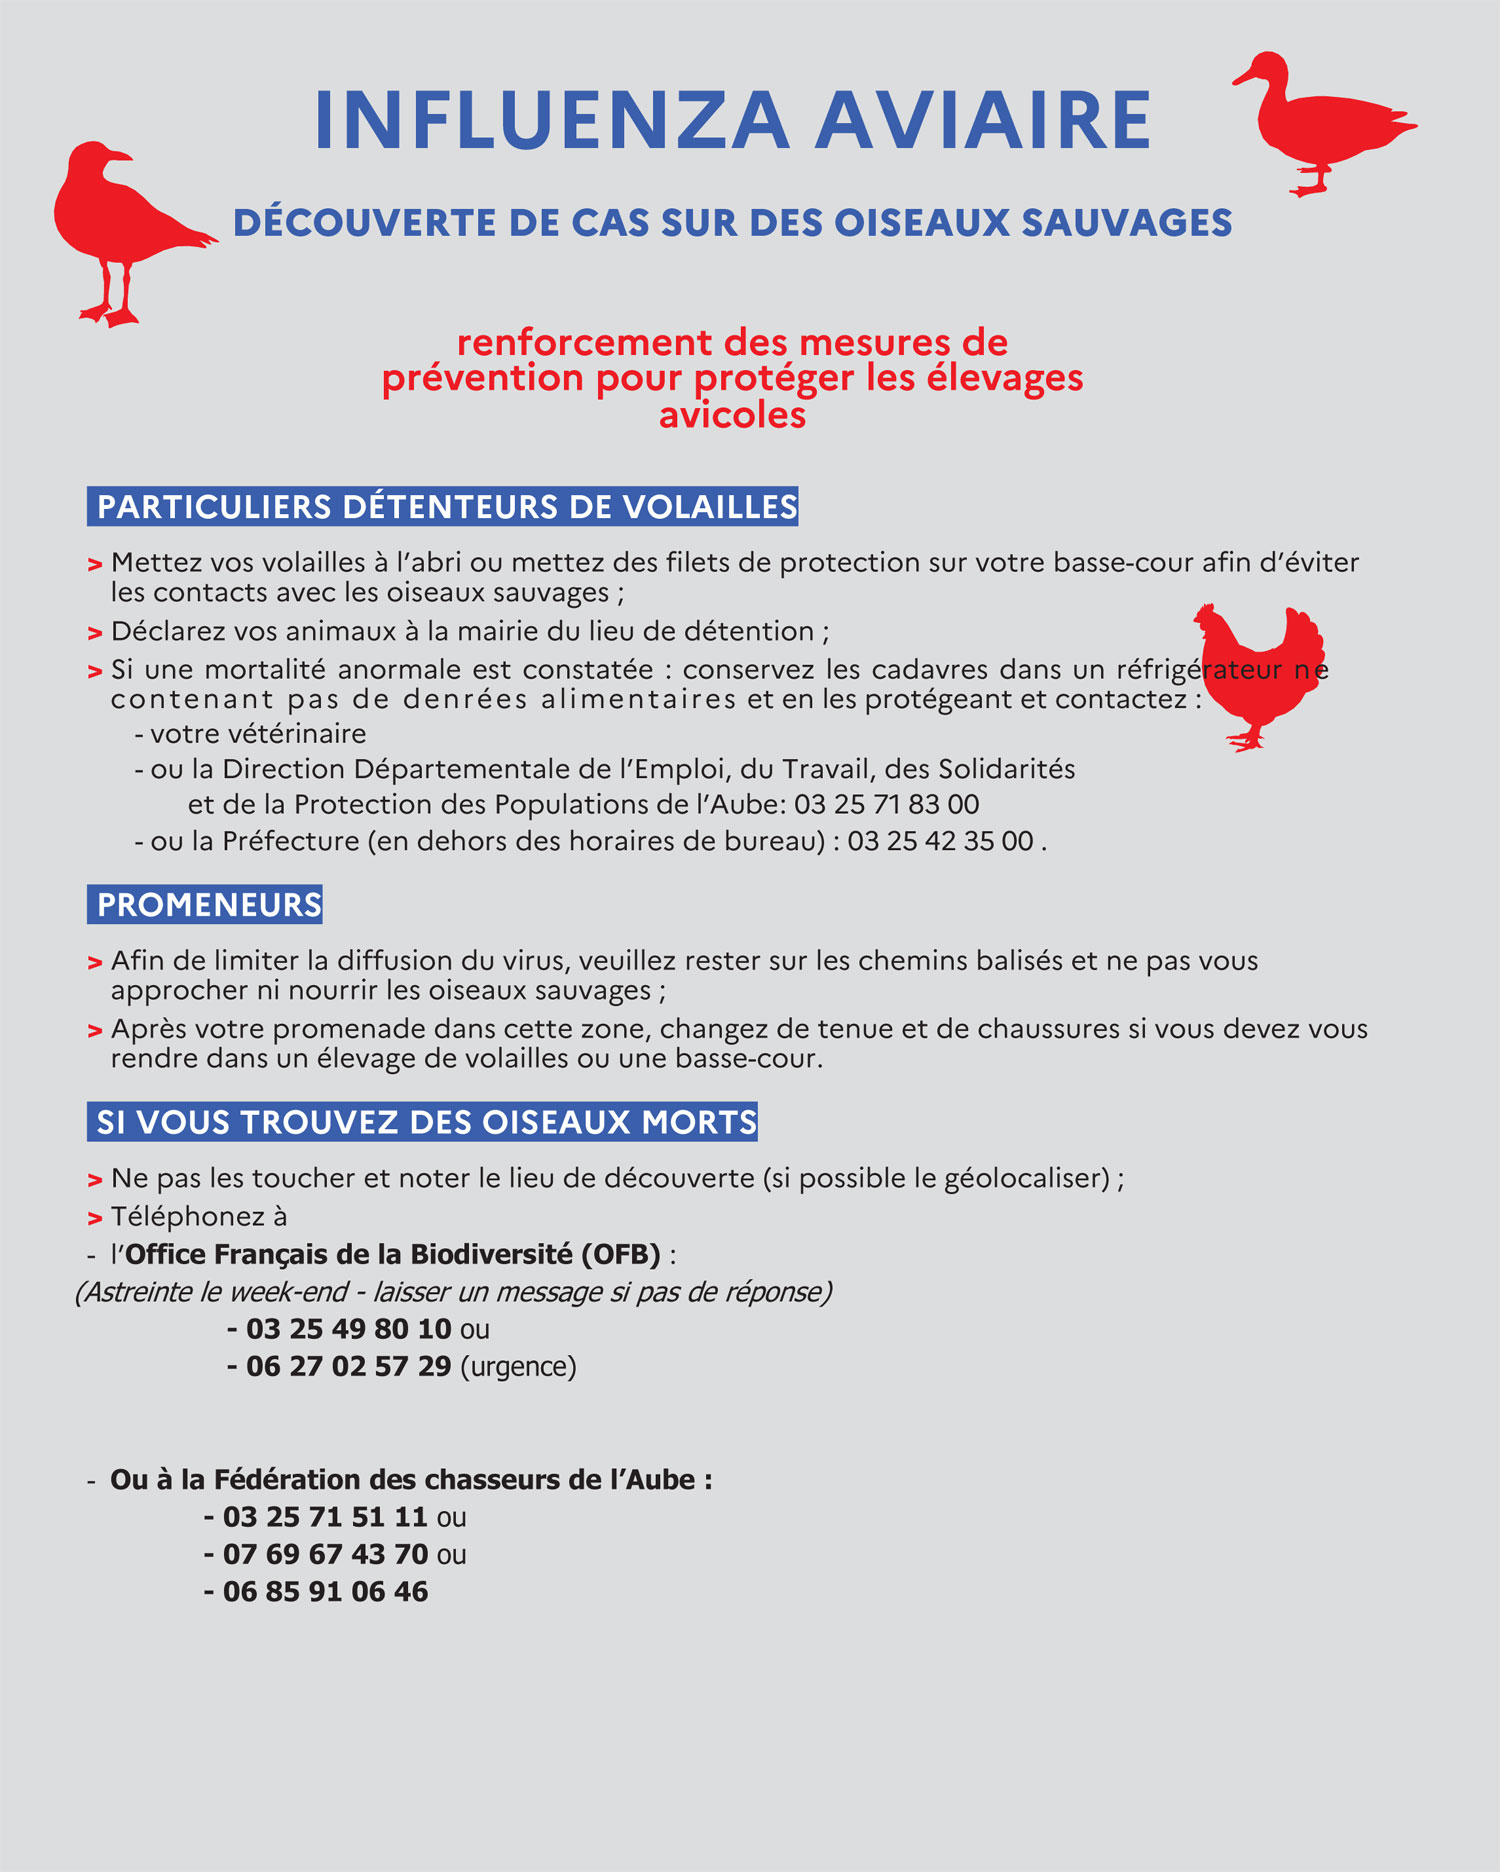 Influenza aviaire : affiche des mesures préventives pour l'Aube